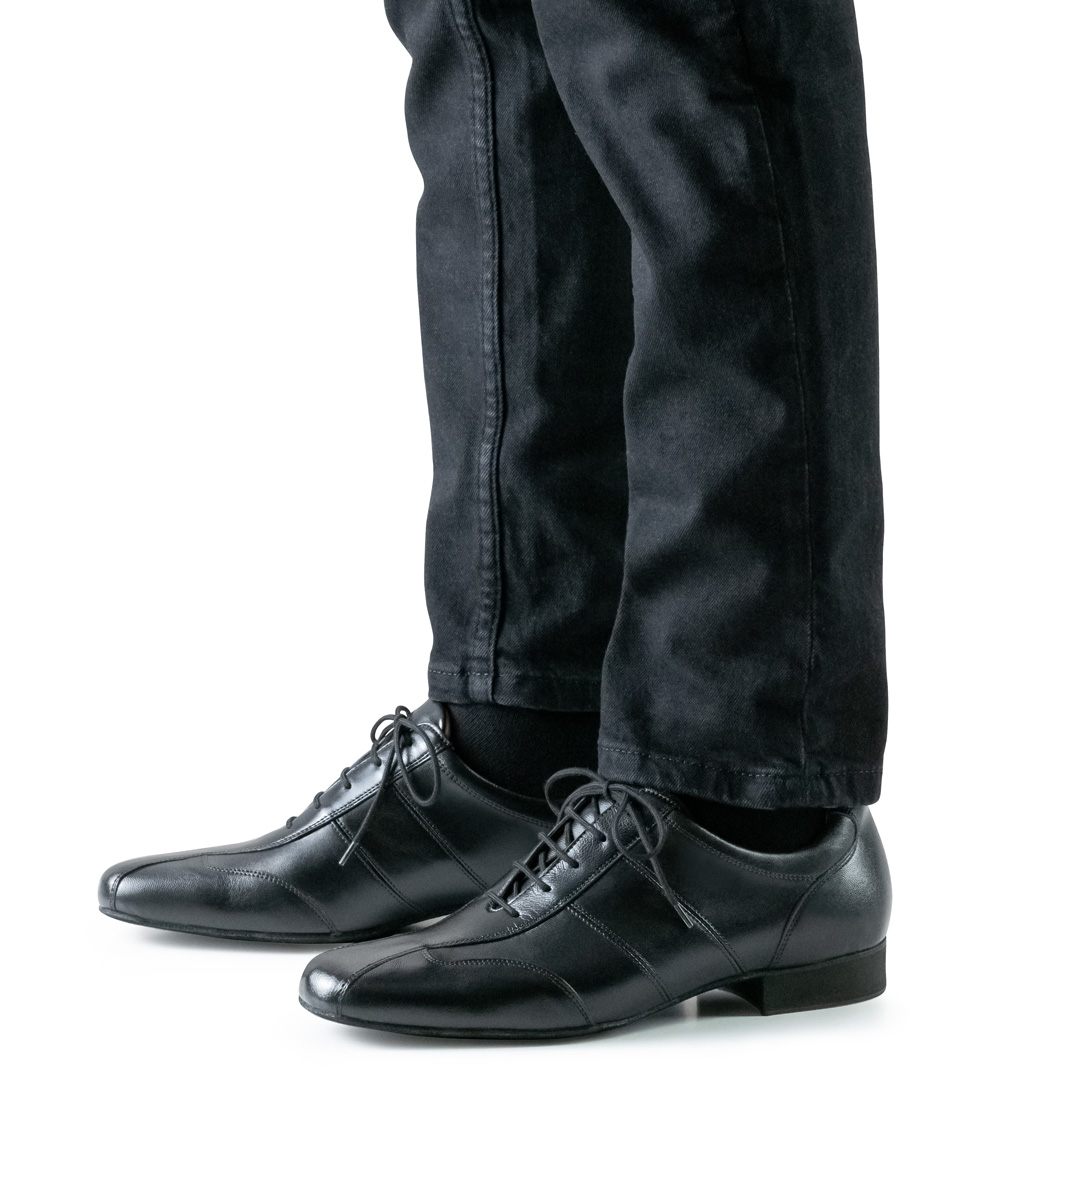 Chaussures de danse sportives pour hommes de Werner Kern en noir en combinaison avec un pantalon noir